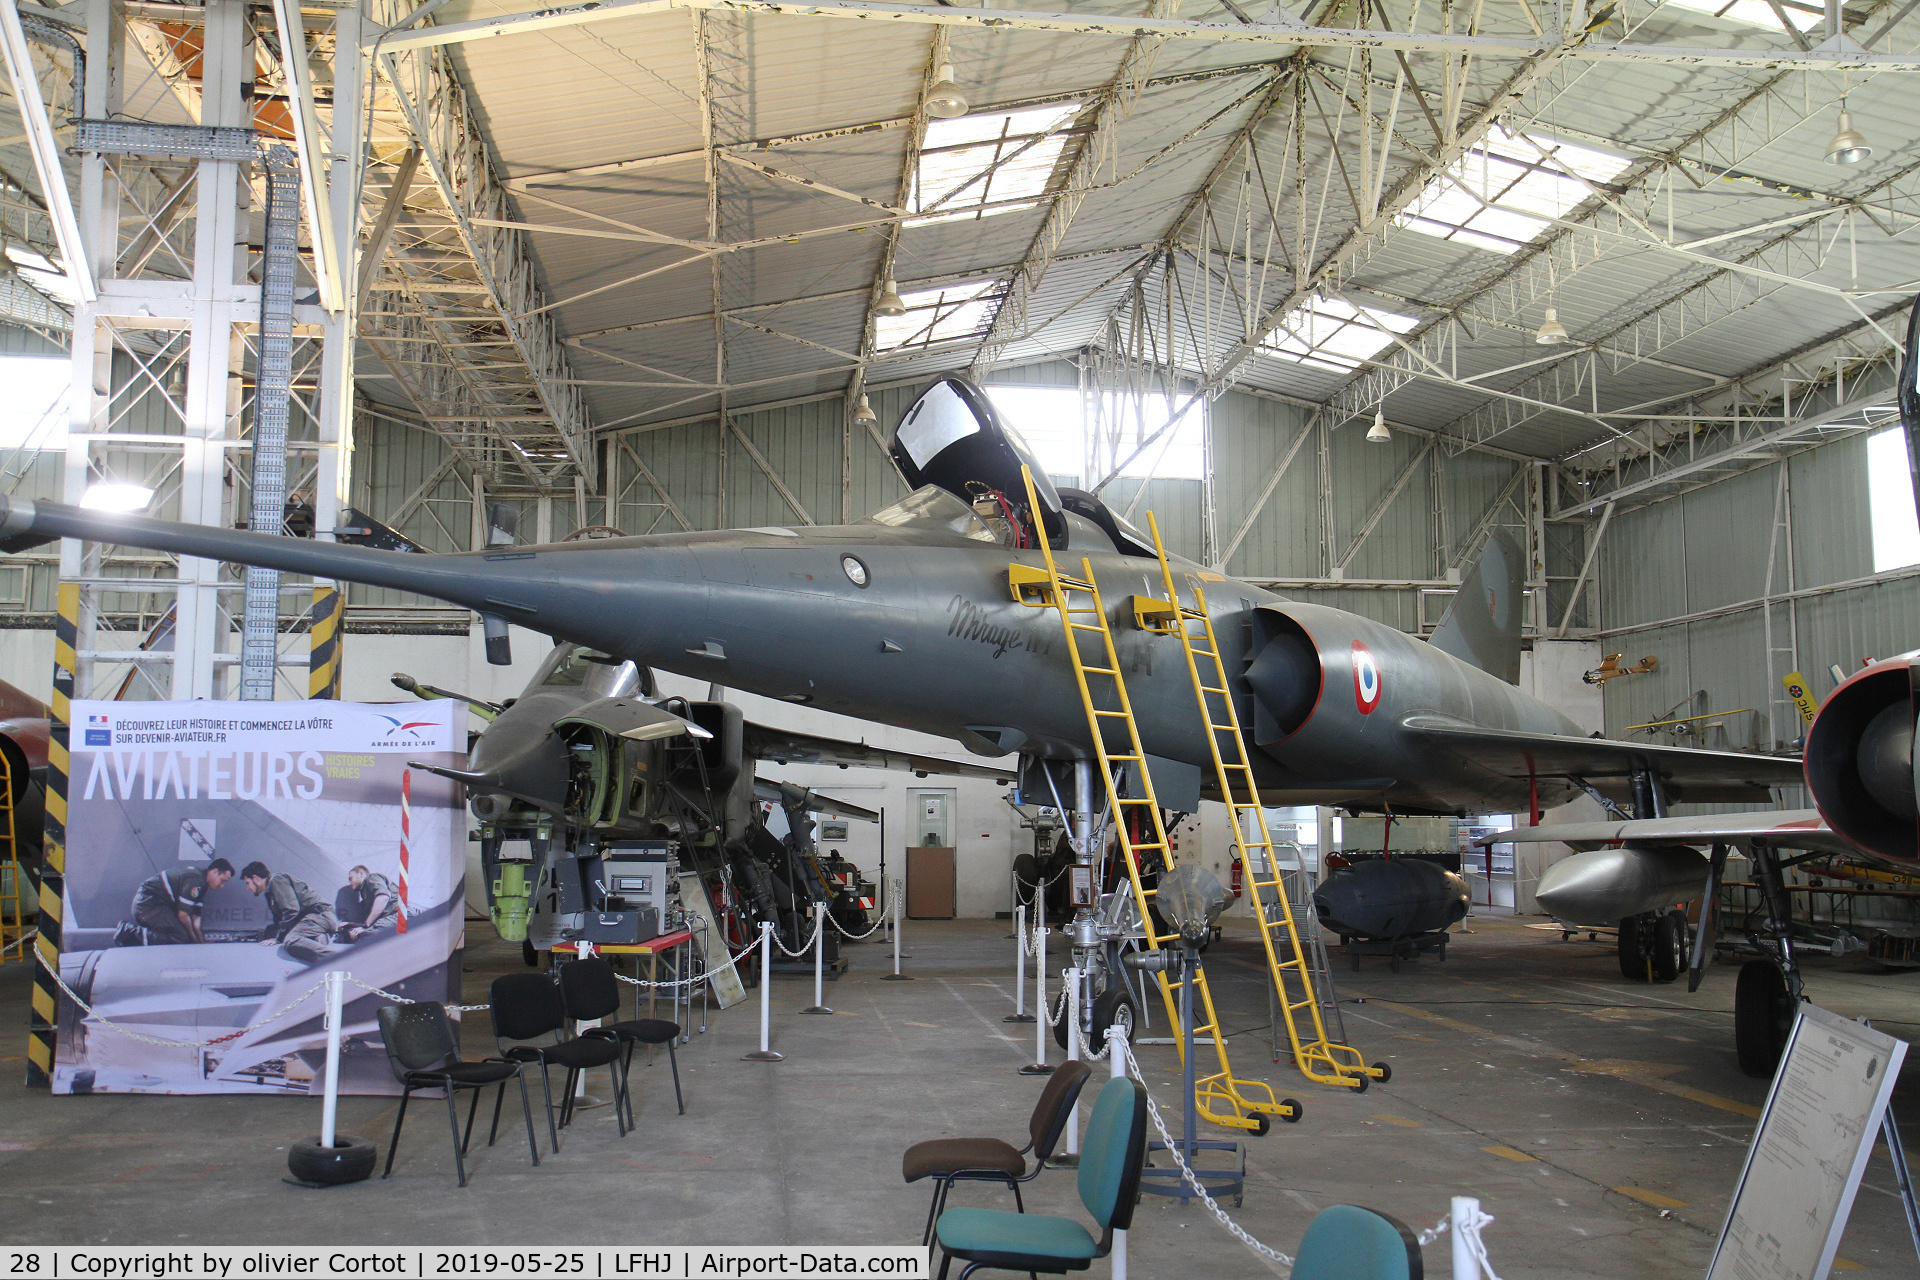 28, Dassault Mirage IVP C/N 28, in a museum near Lyon